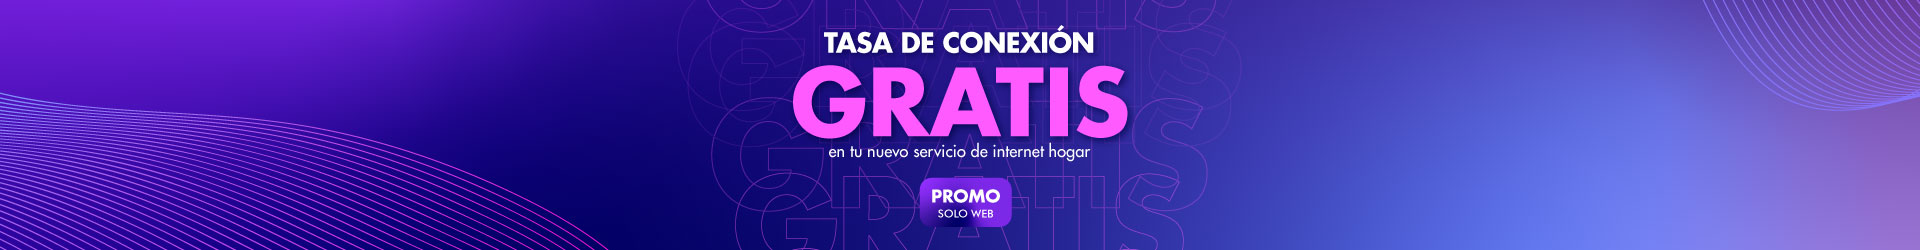 Tasa de conexión gratis en tu nuevo servicio de internet hogar. Promo solo web.